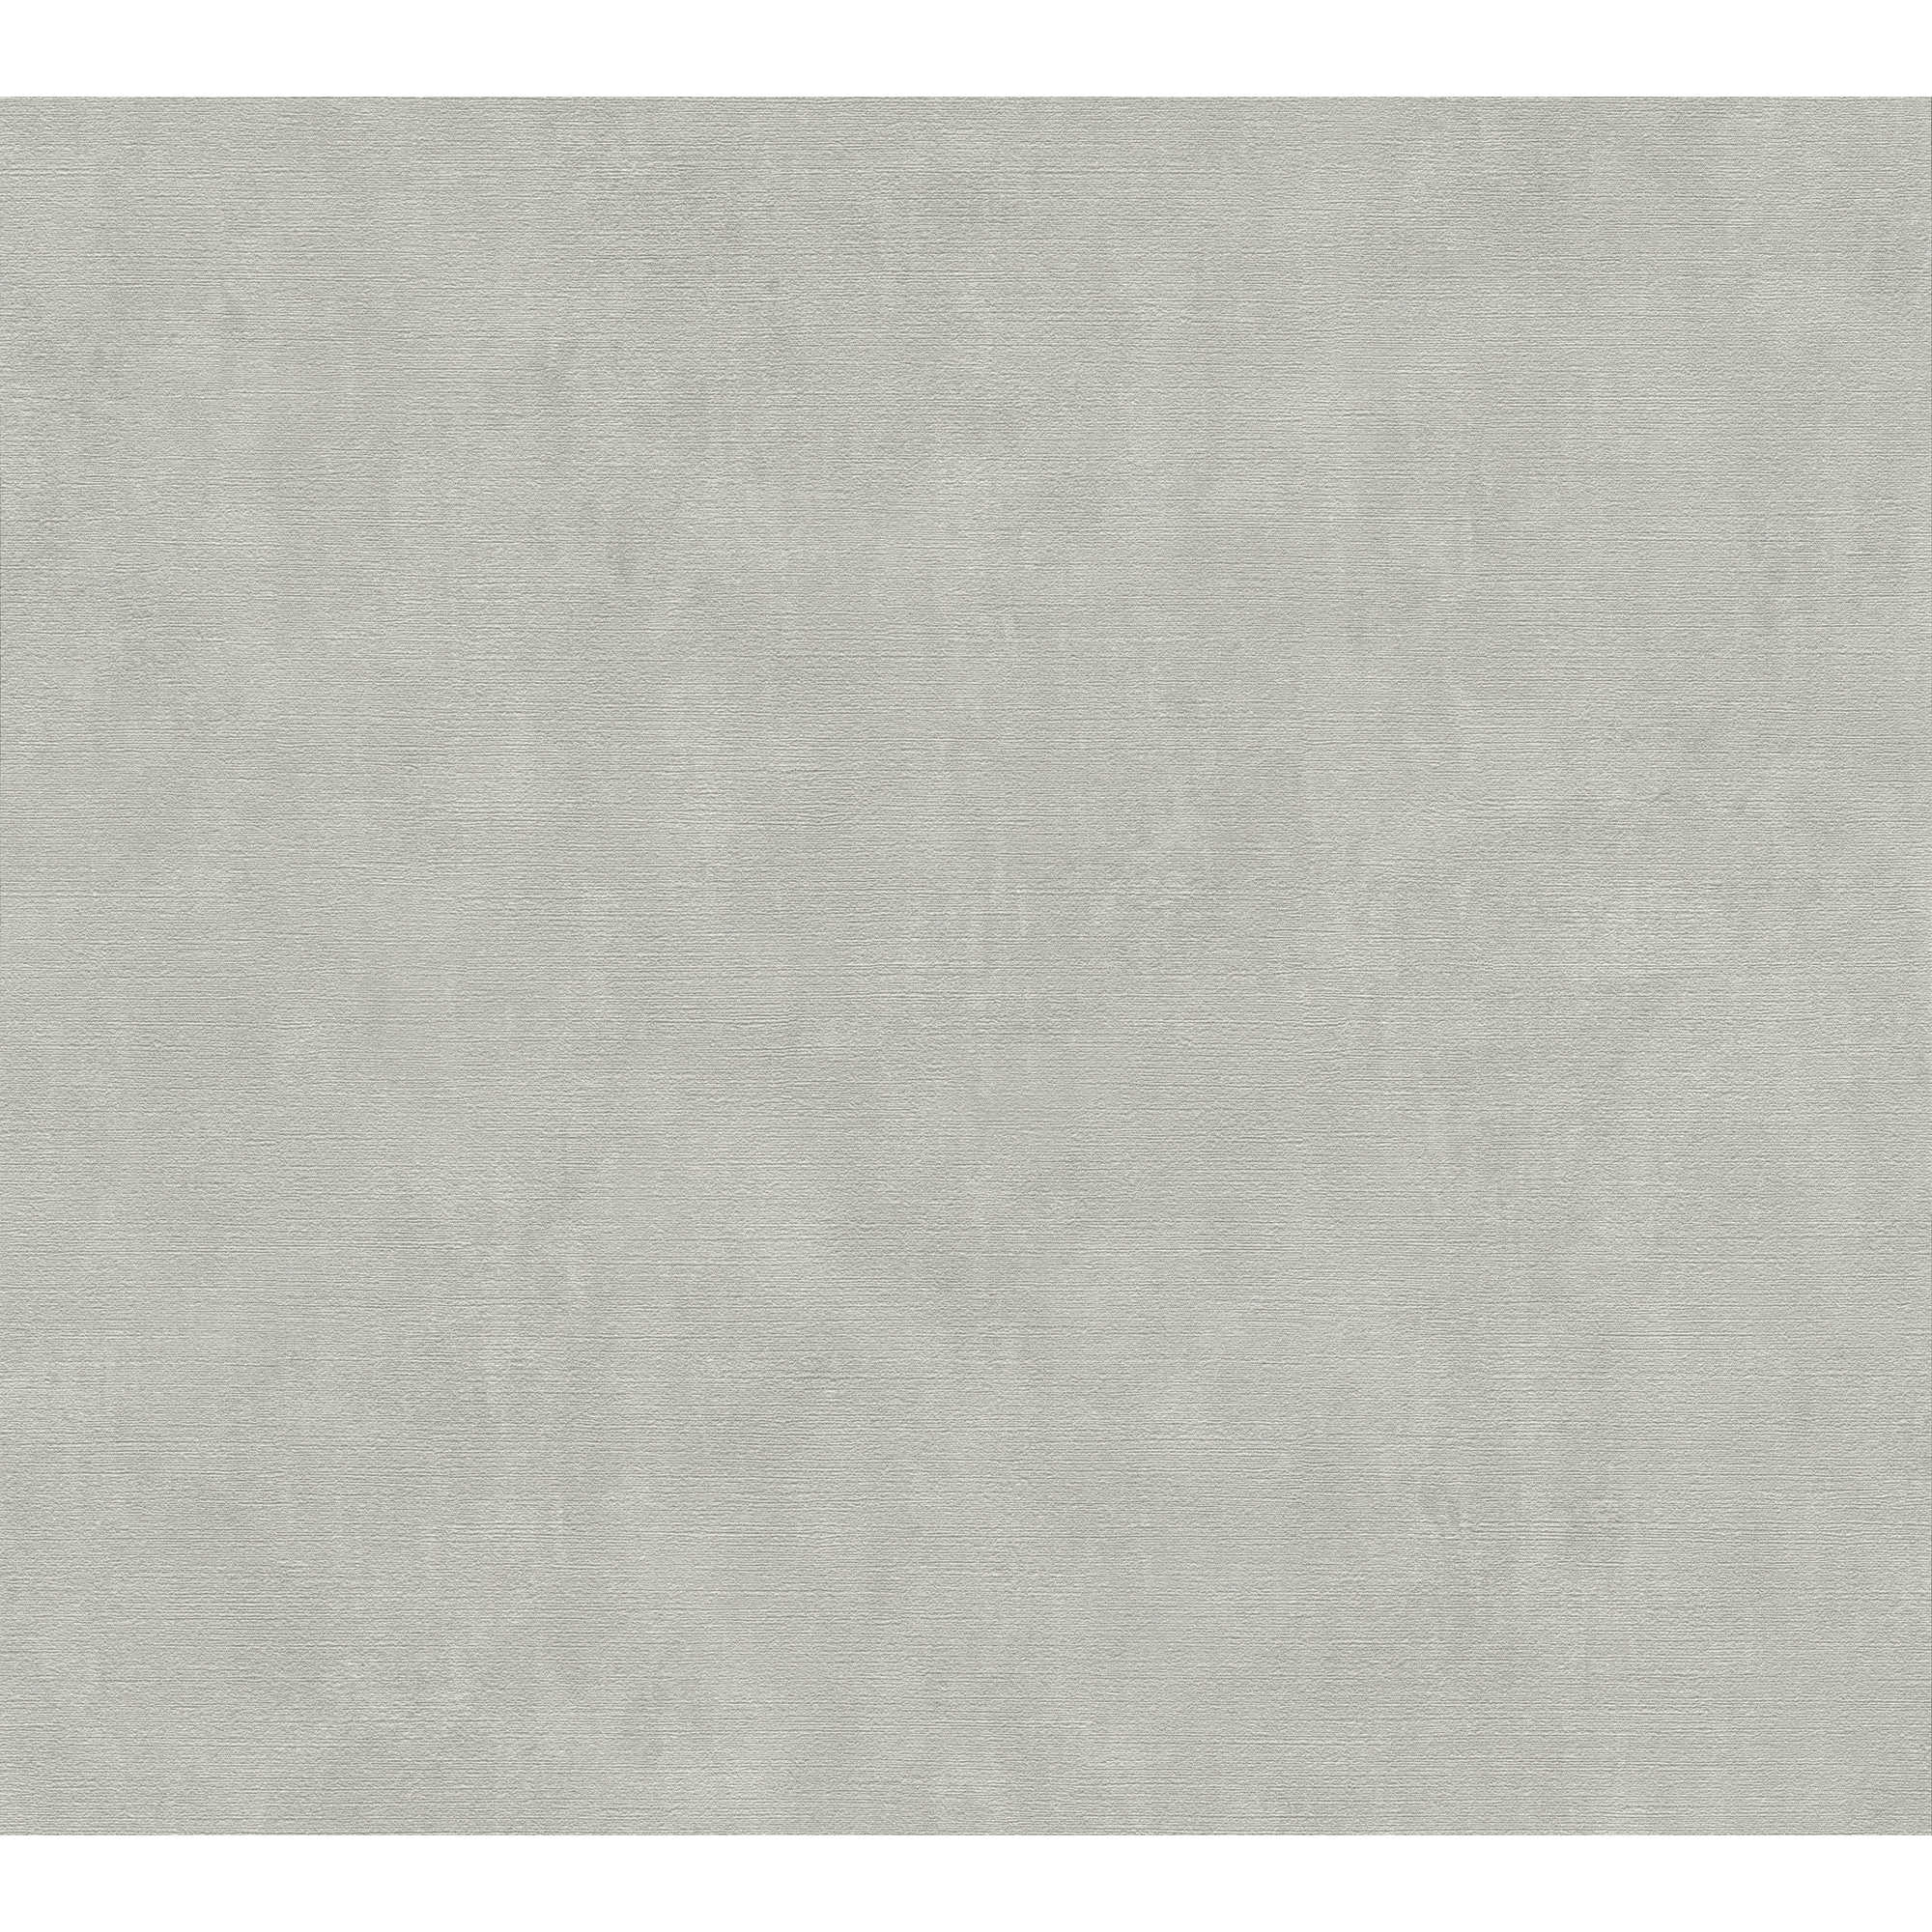 Vliestapete 'Cuba' Putzoptik grau/beige 10,05 x 0,53 m + product picture